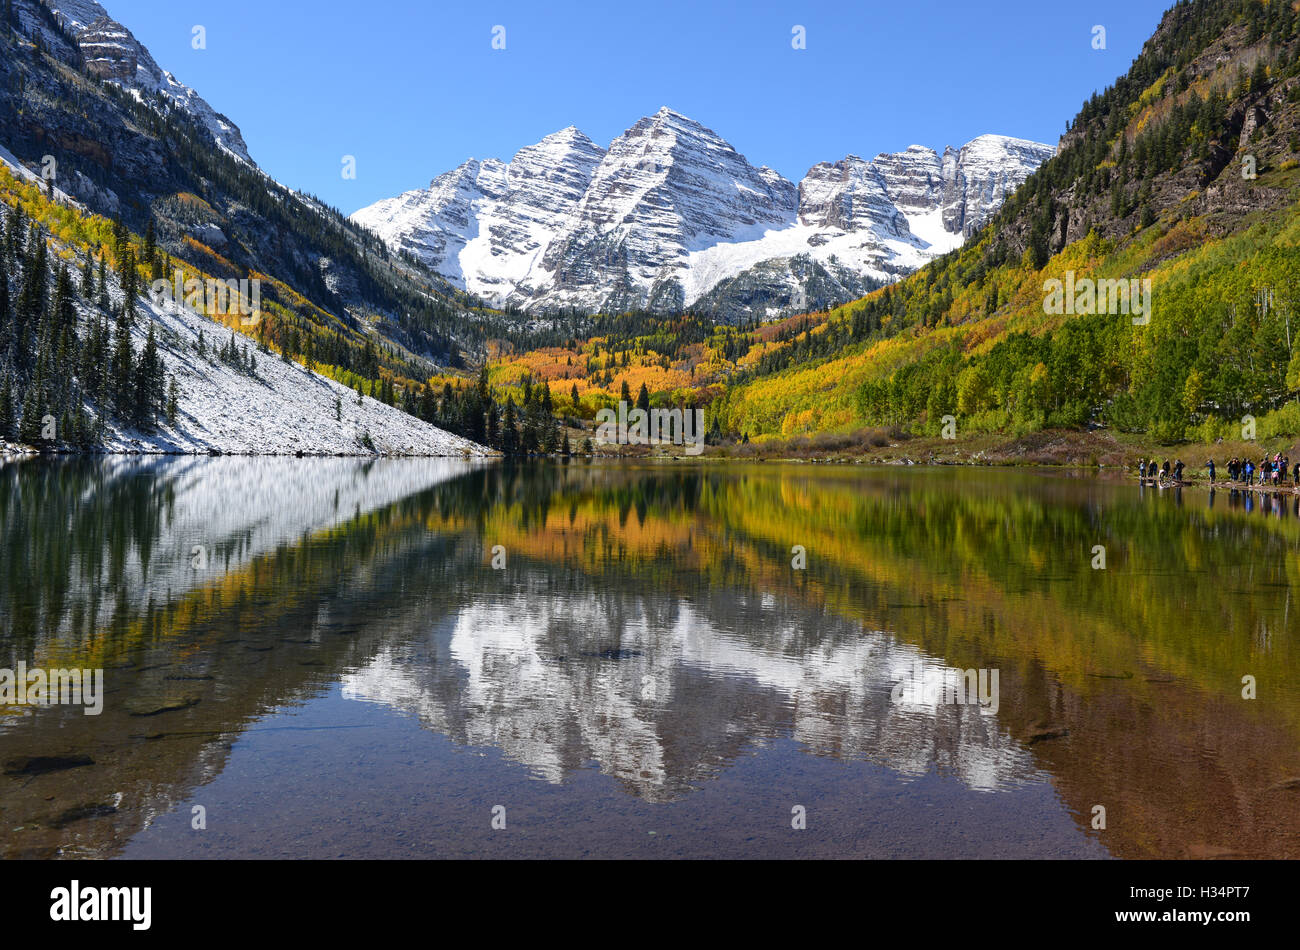 Lac de montagne d'automne - automne voir la neige de Maroon Bells couché se reflétant dans crystal clear Maroon Lake, Aspen, Colorado, USA. Banque D'Images